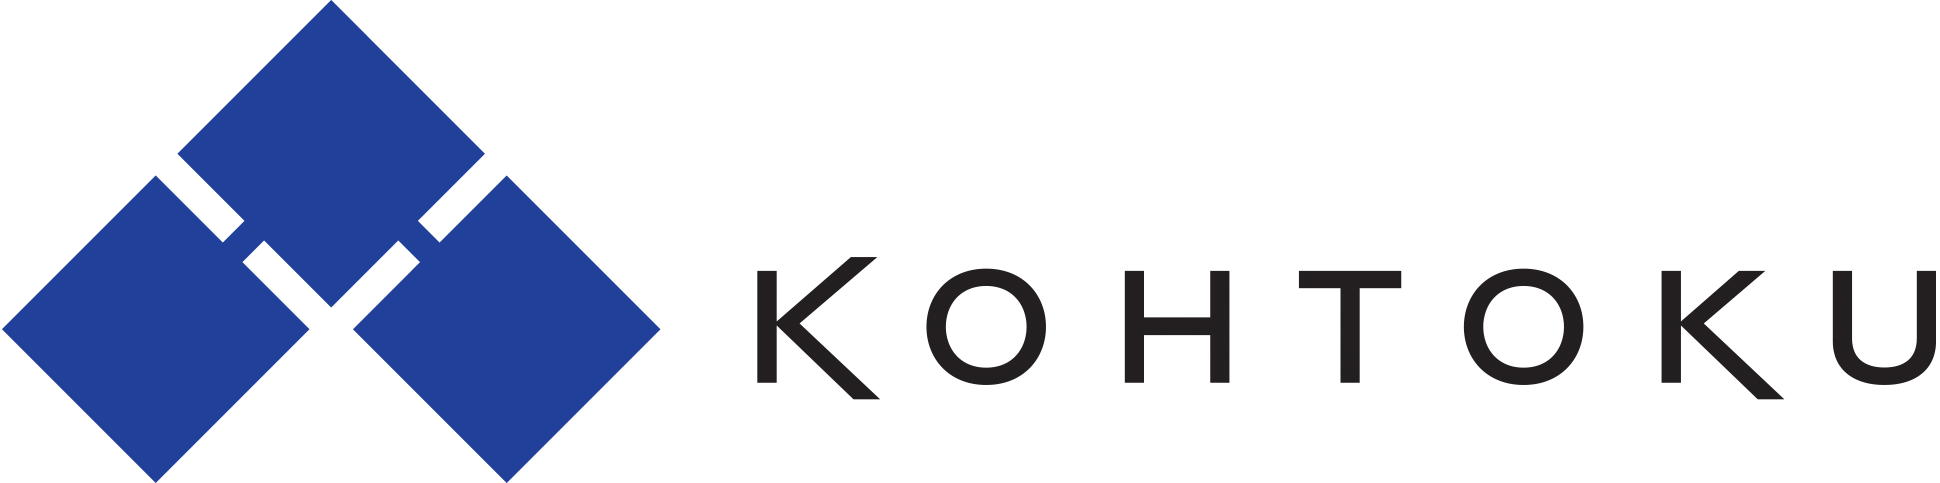 Kohtoku Enterprises／宏徳エンタープライズロゴ